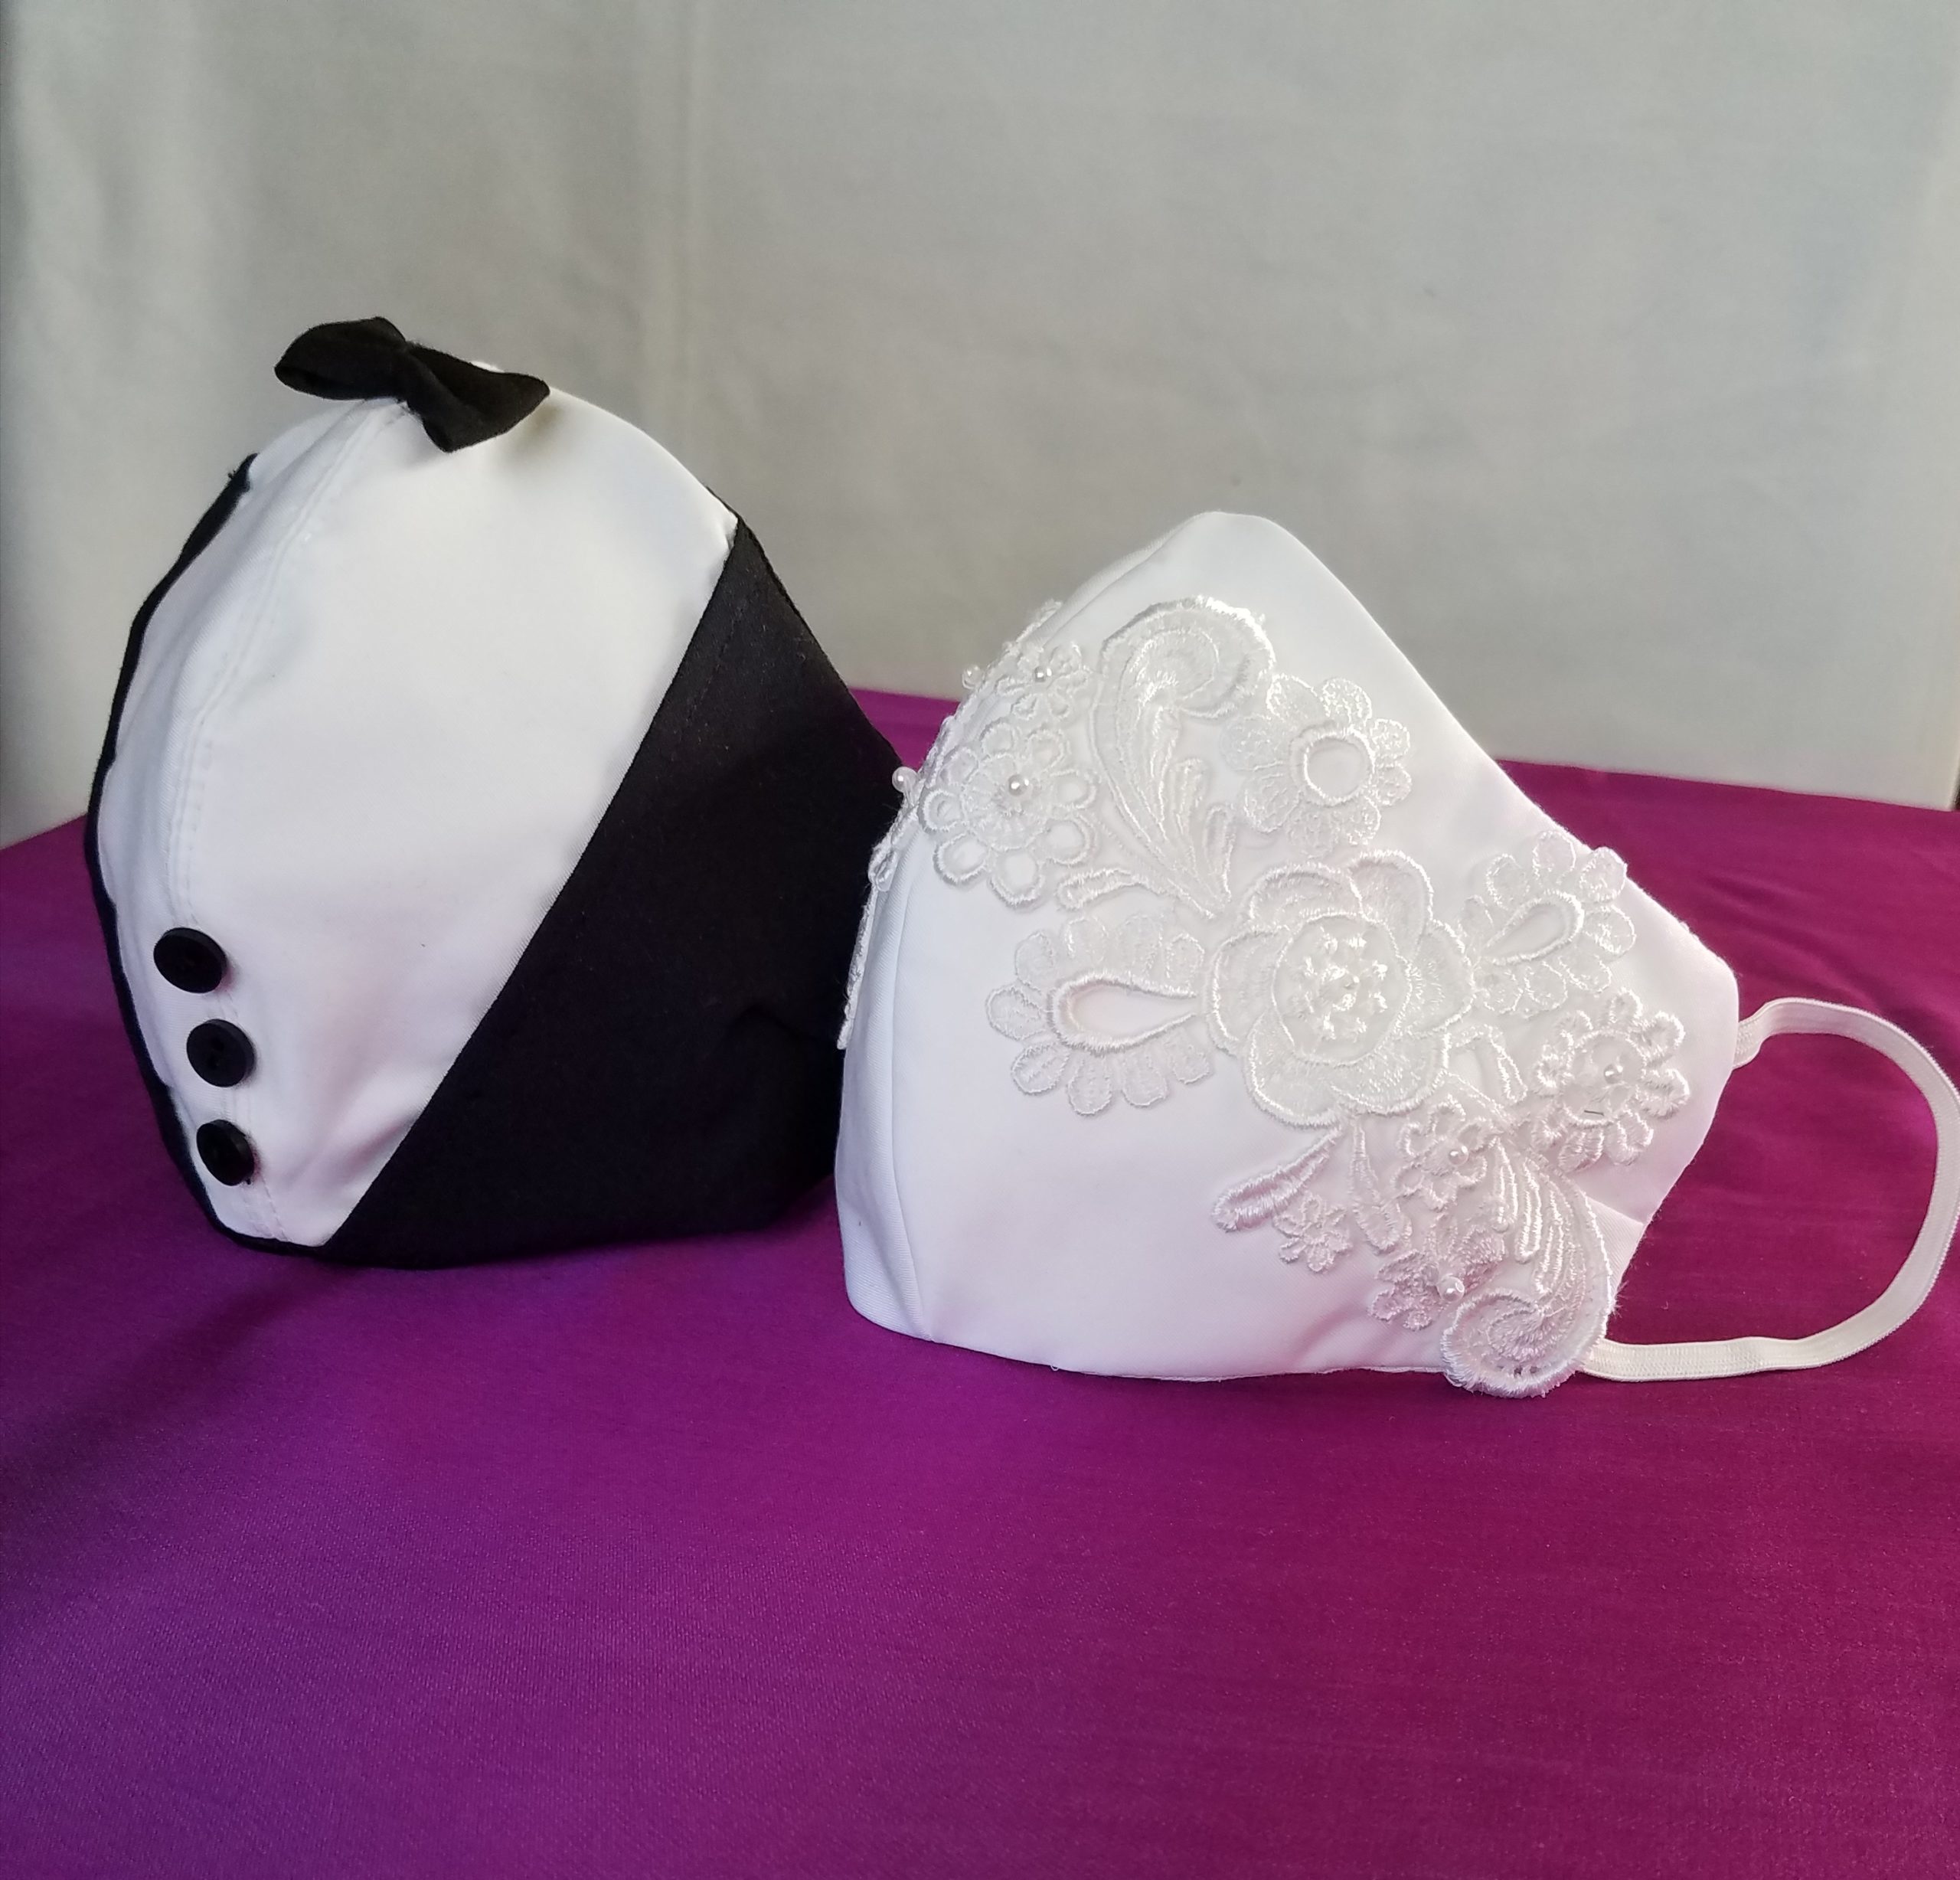 انواع ماسک ضد کرونا برای عروس و داماد